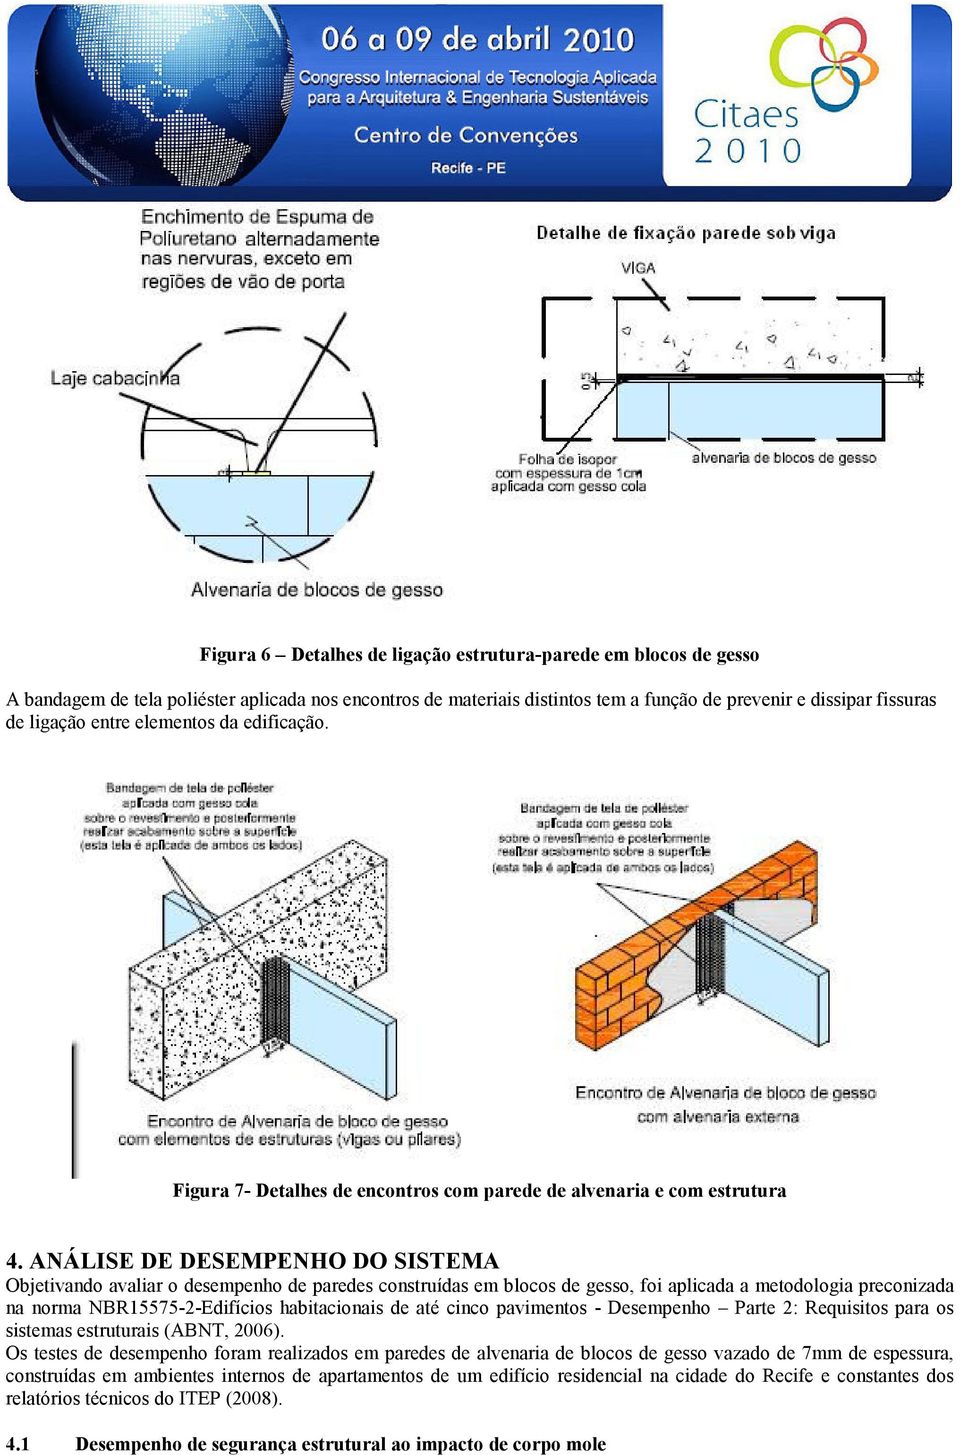 ANÁLISE DE DESEMPENHO DO SISTEMA Objetivando avaliar o desempenho de paredes construídas em blocos de gesso, foi aplicada a metodologia preconizada na norma NBR15575-2-Edifícios habitacionais de até